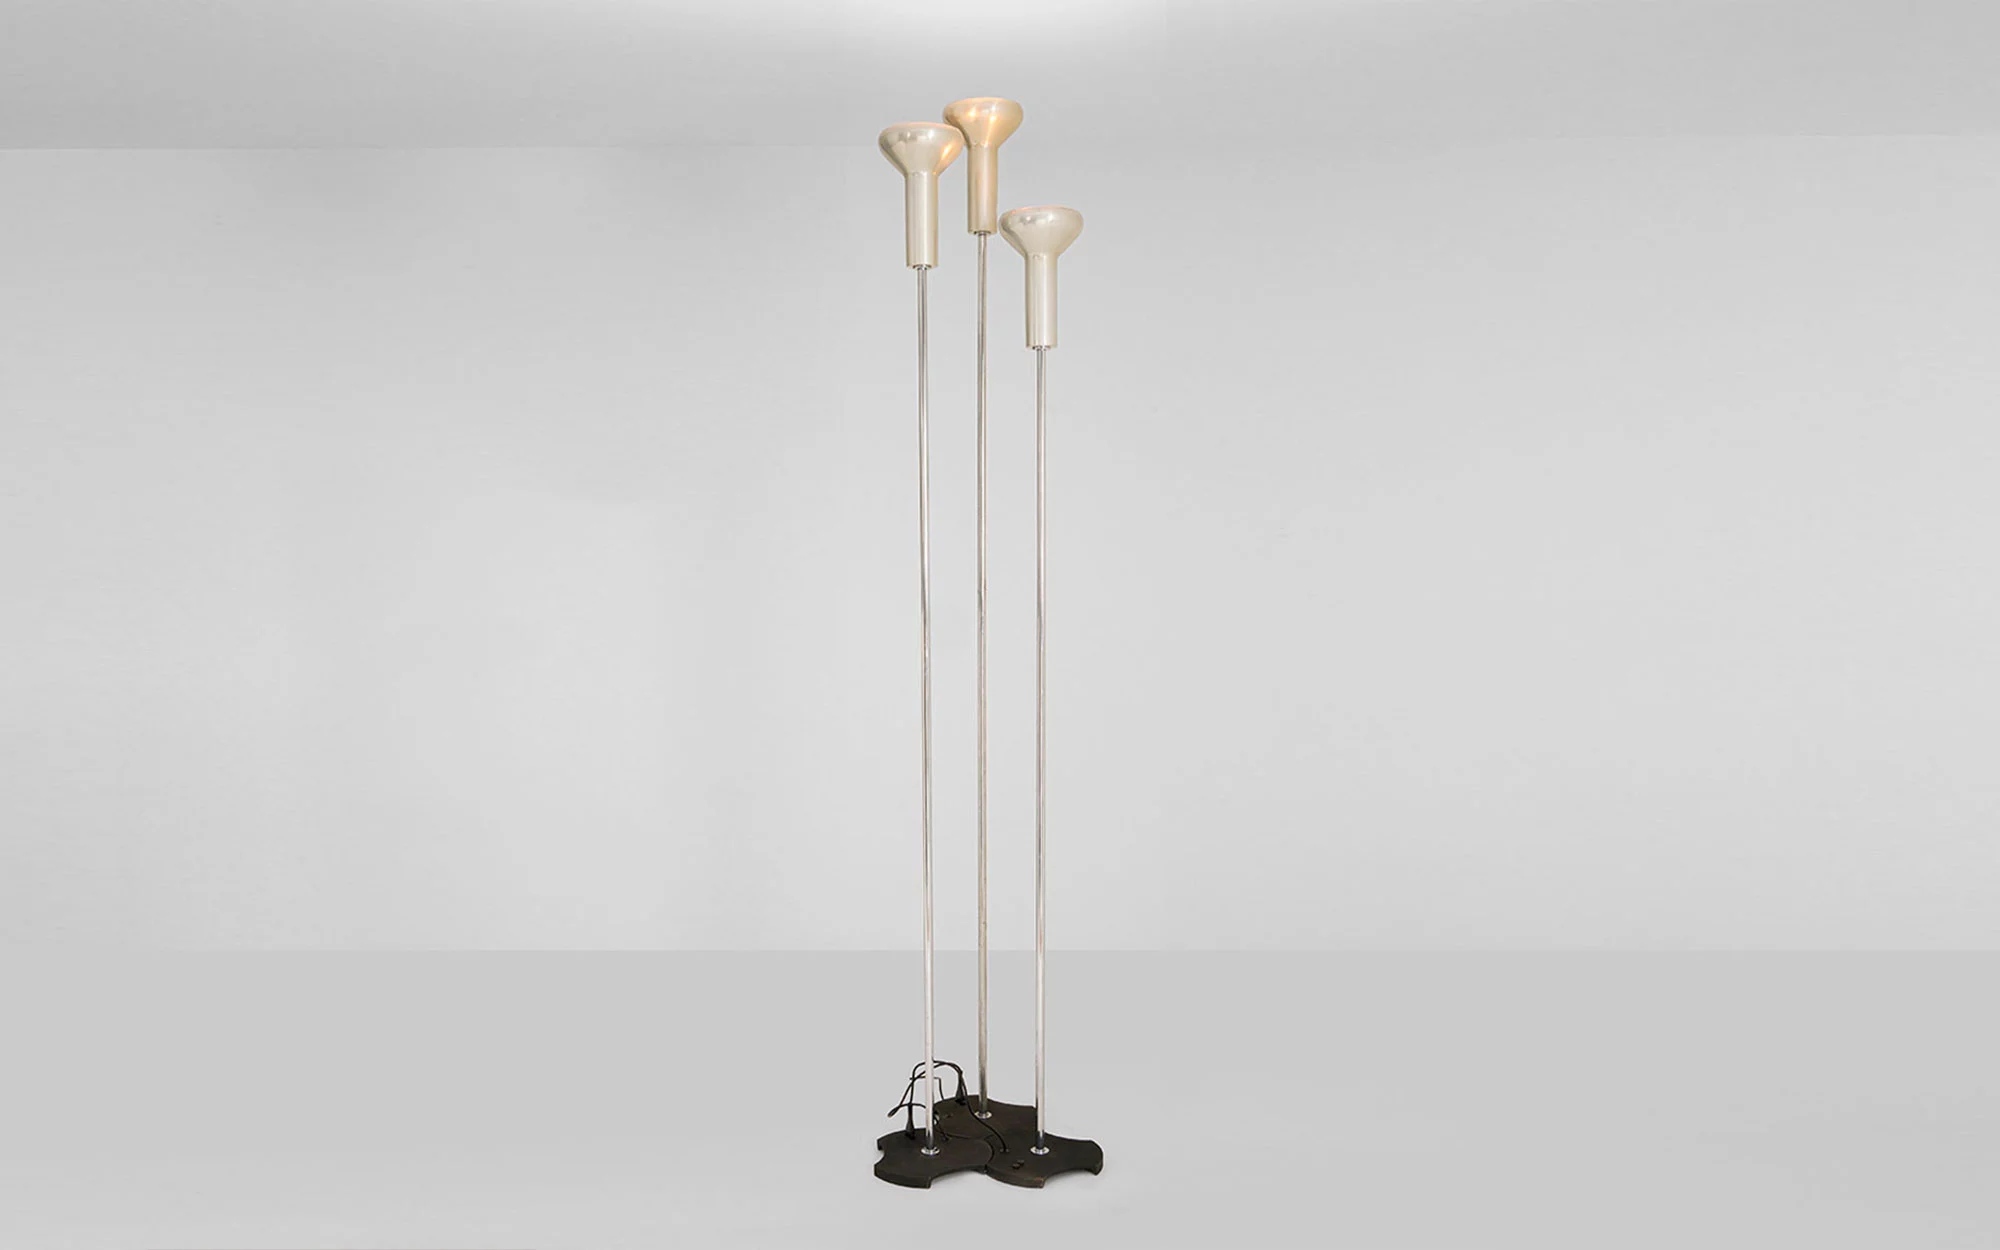 1073/3 - Gino Sarfatti - Table light - Galerie kreo